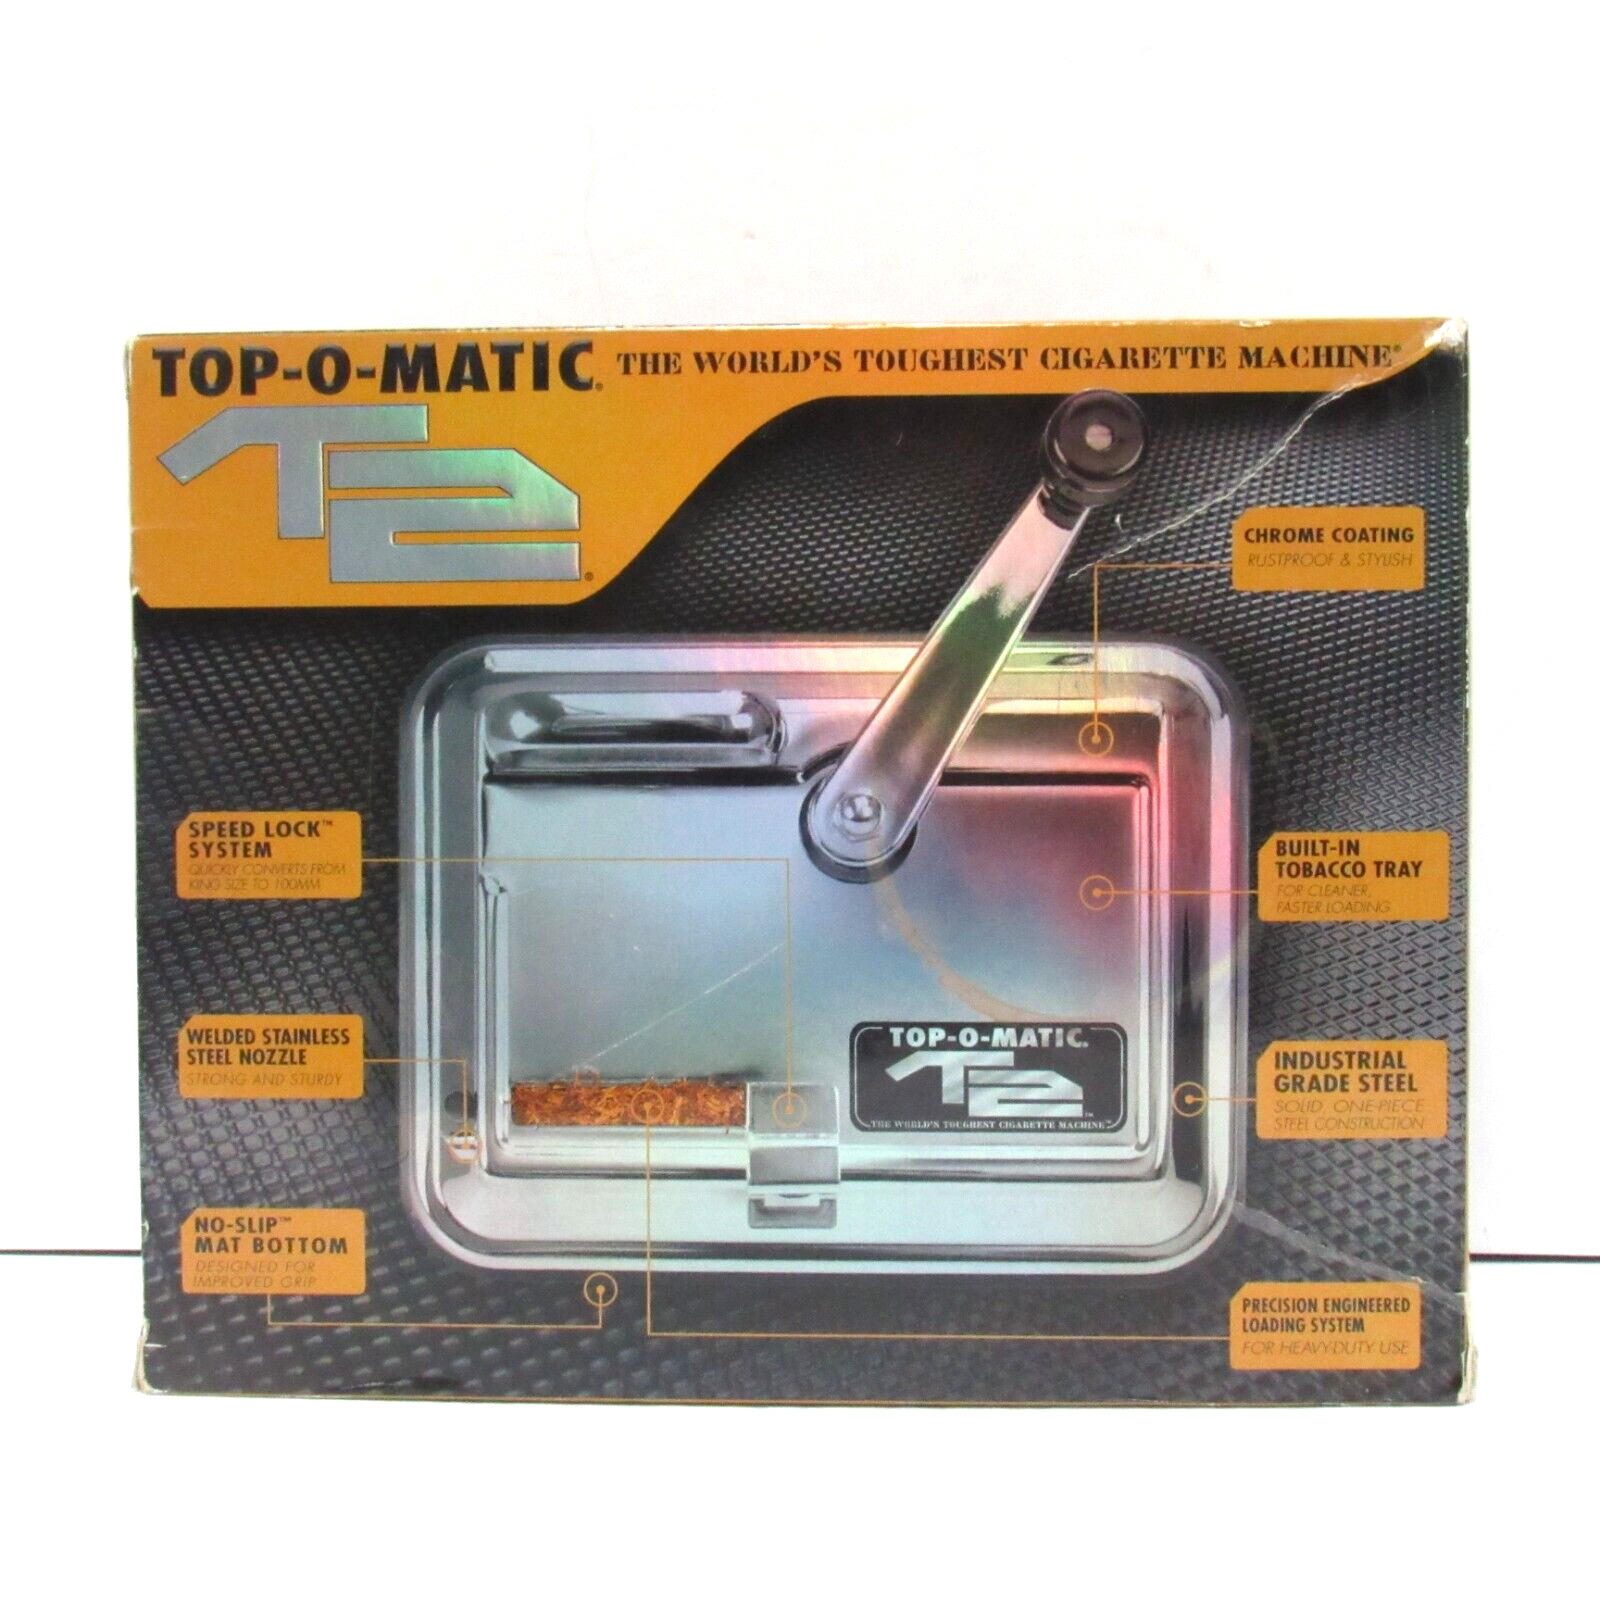 Top-O-Matic T2 Cigarette Rolling Machine In Original Box